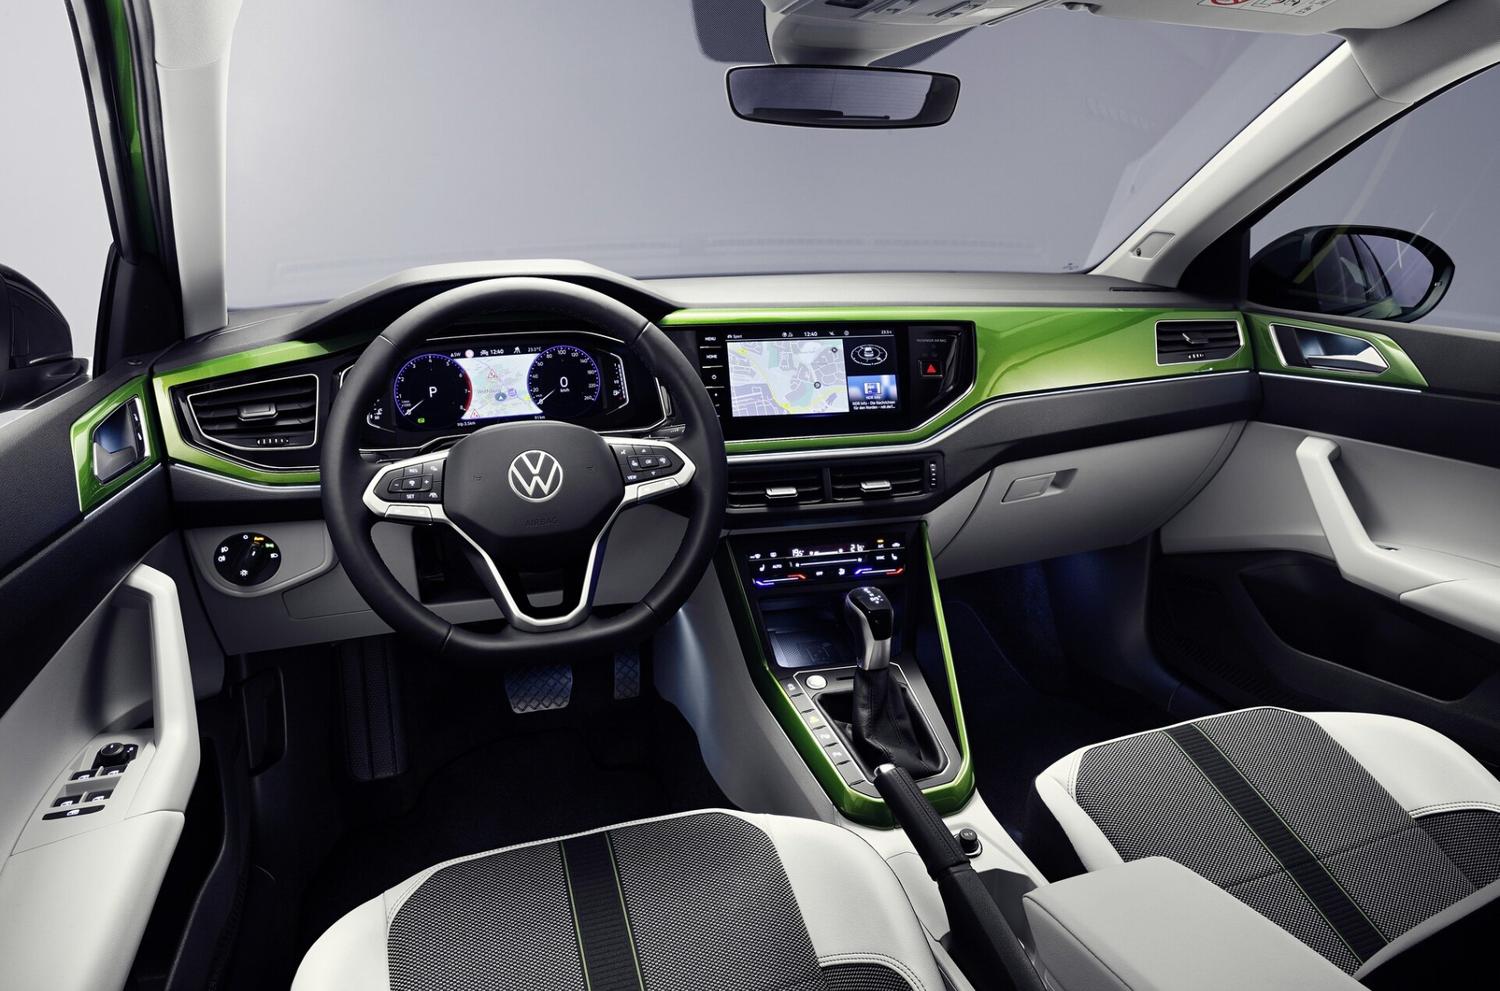 Новый Volkswagen Taigo 2021 общая платформа с Polo и T-Cross продажи в этом году